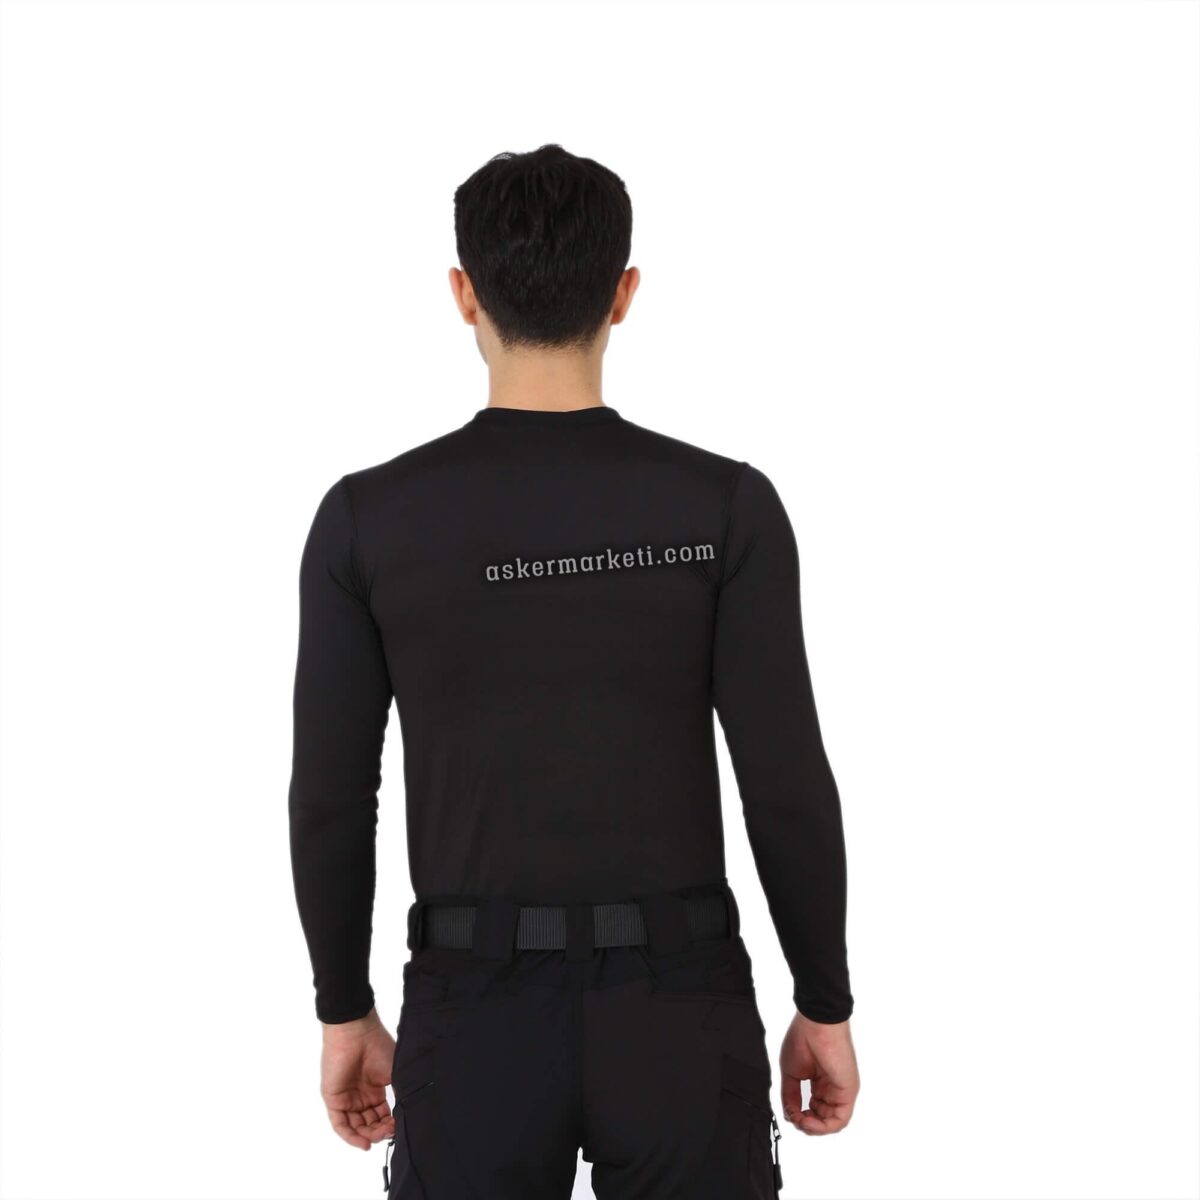 siyah uzun kol micro tshirt tisort askeri malzeme2 ink